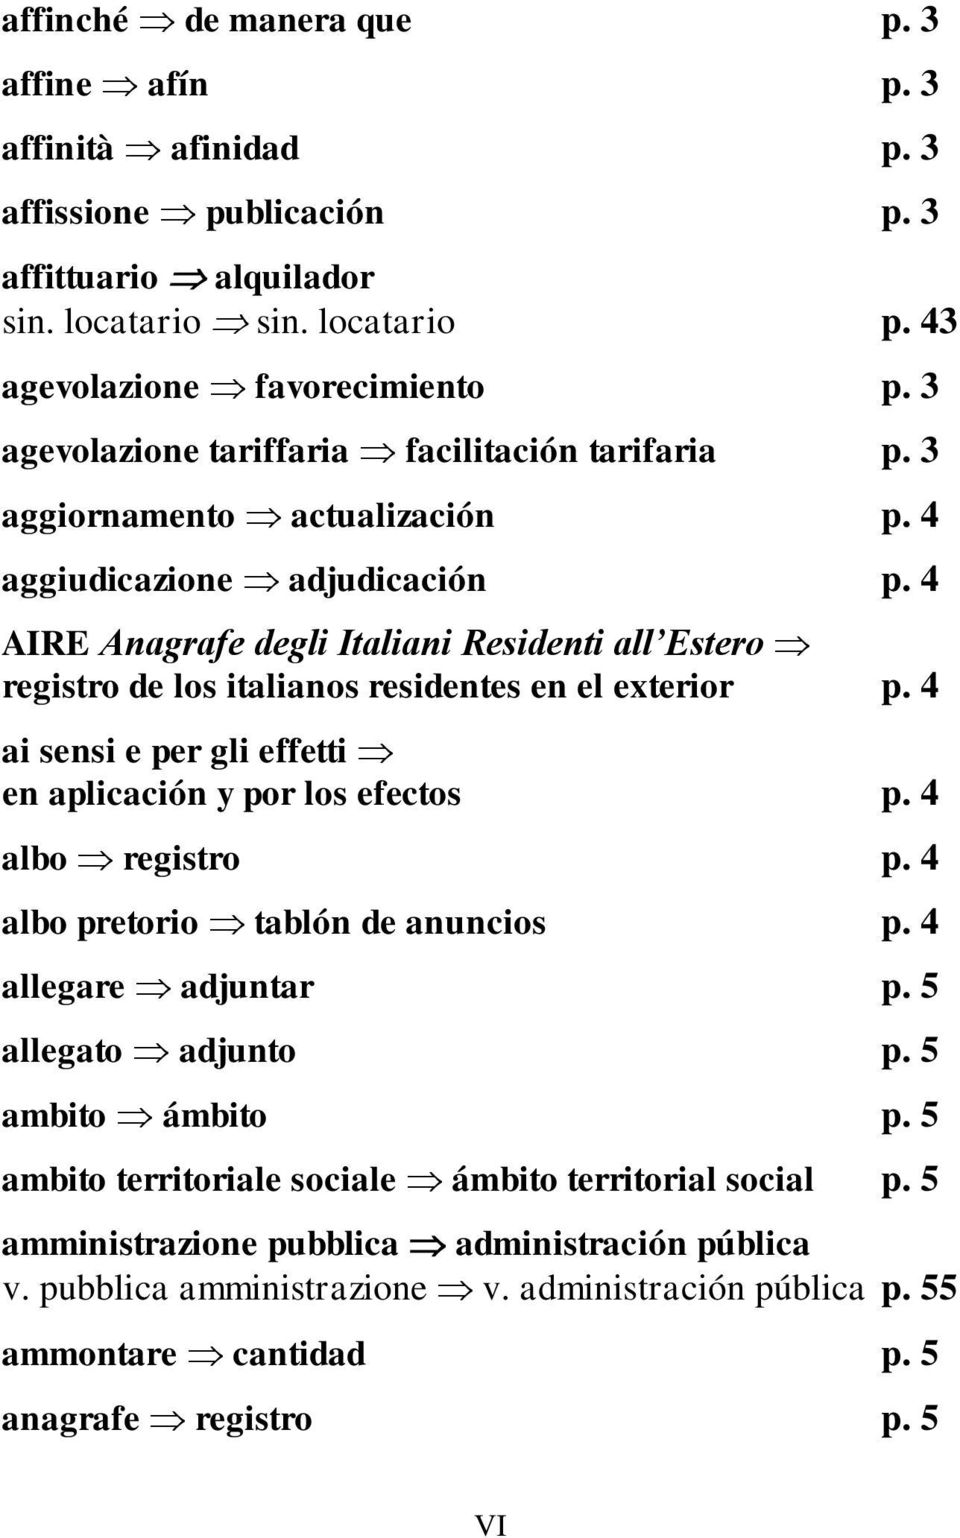 4 AIRE Anagrafe degli Italiani Residenti all Estero registro de los italianos residentes en el exterior p. 4 ai sensi e per gli effetti en aplicación y por los efectos p. 4 albo registro p.